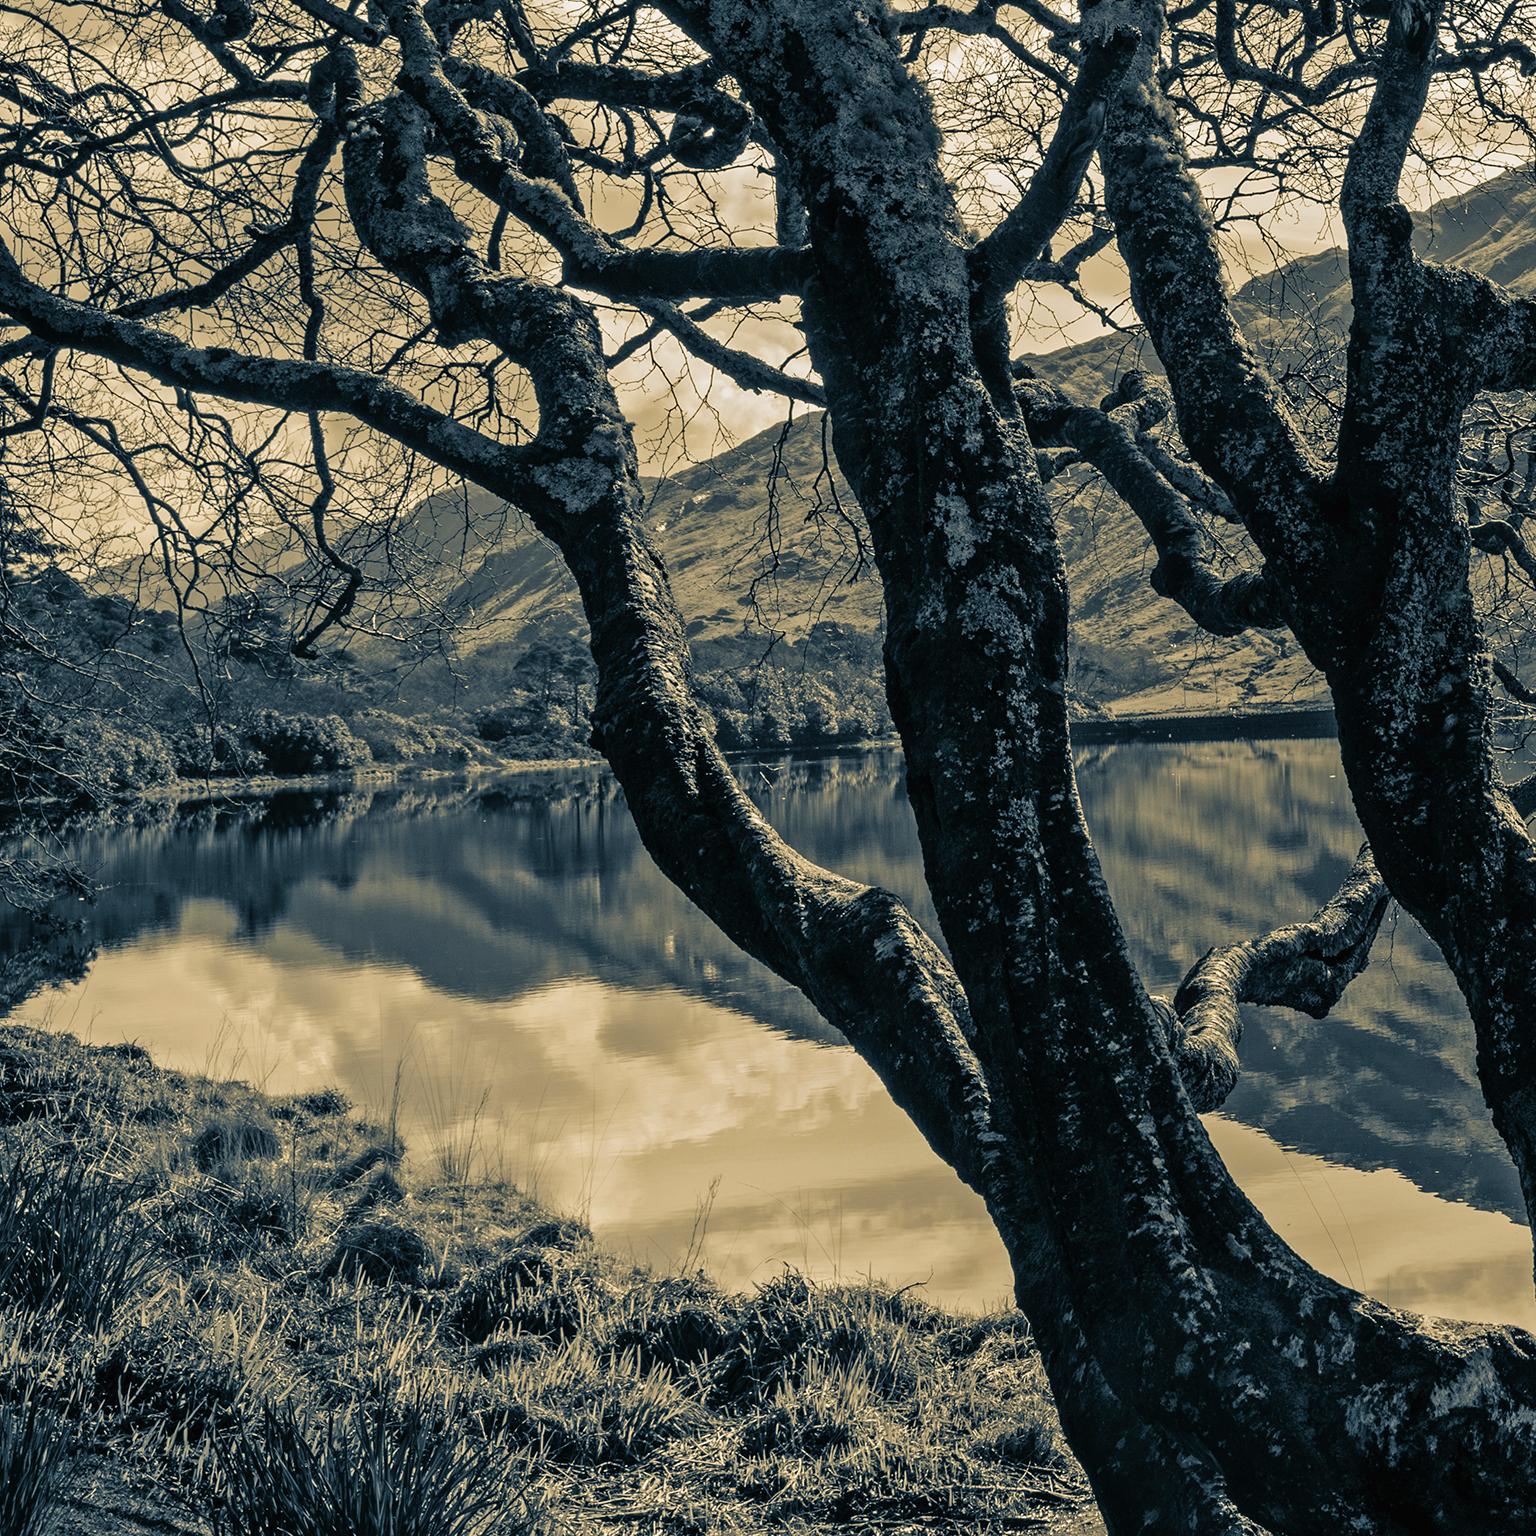 
 Paysage de montagnes et de lac. Château de Kylemore, comté de Galway, Connemara, Irlande, 2018.

 Photographie de Cosmo Condina d'un paysage tonique en noir et blanc. Irlande, Connemara, Comté de Galway.
 
Il s'agit d'un paysage spectaculaire de